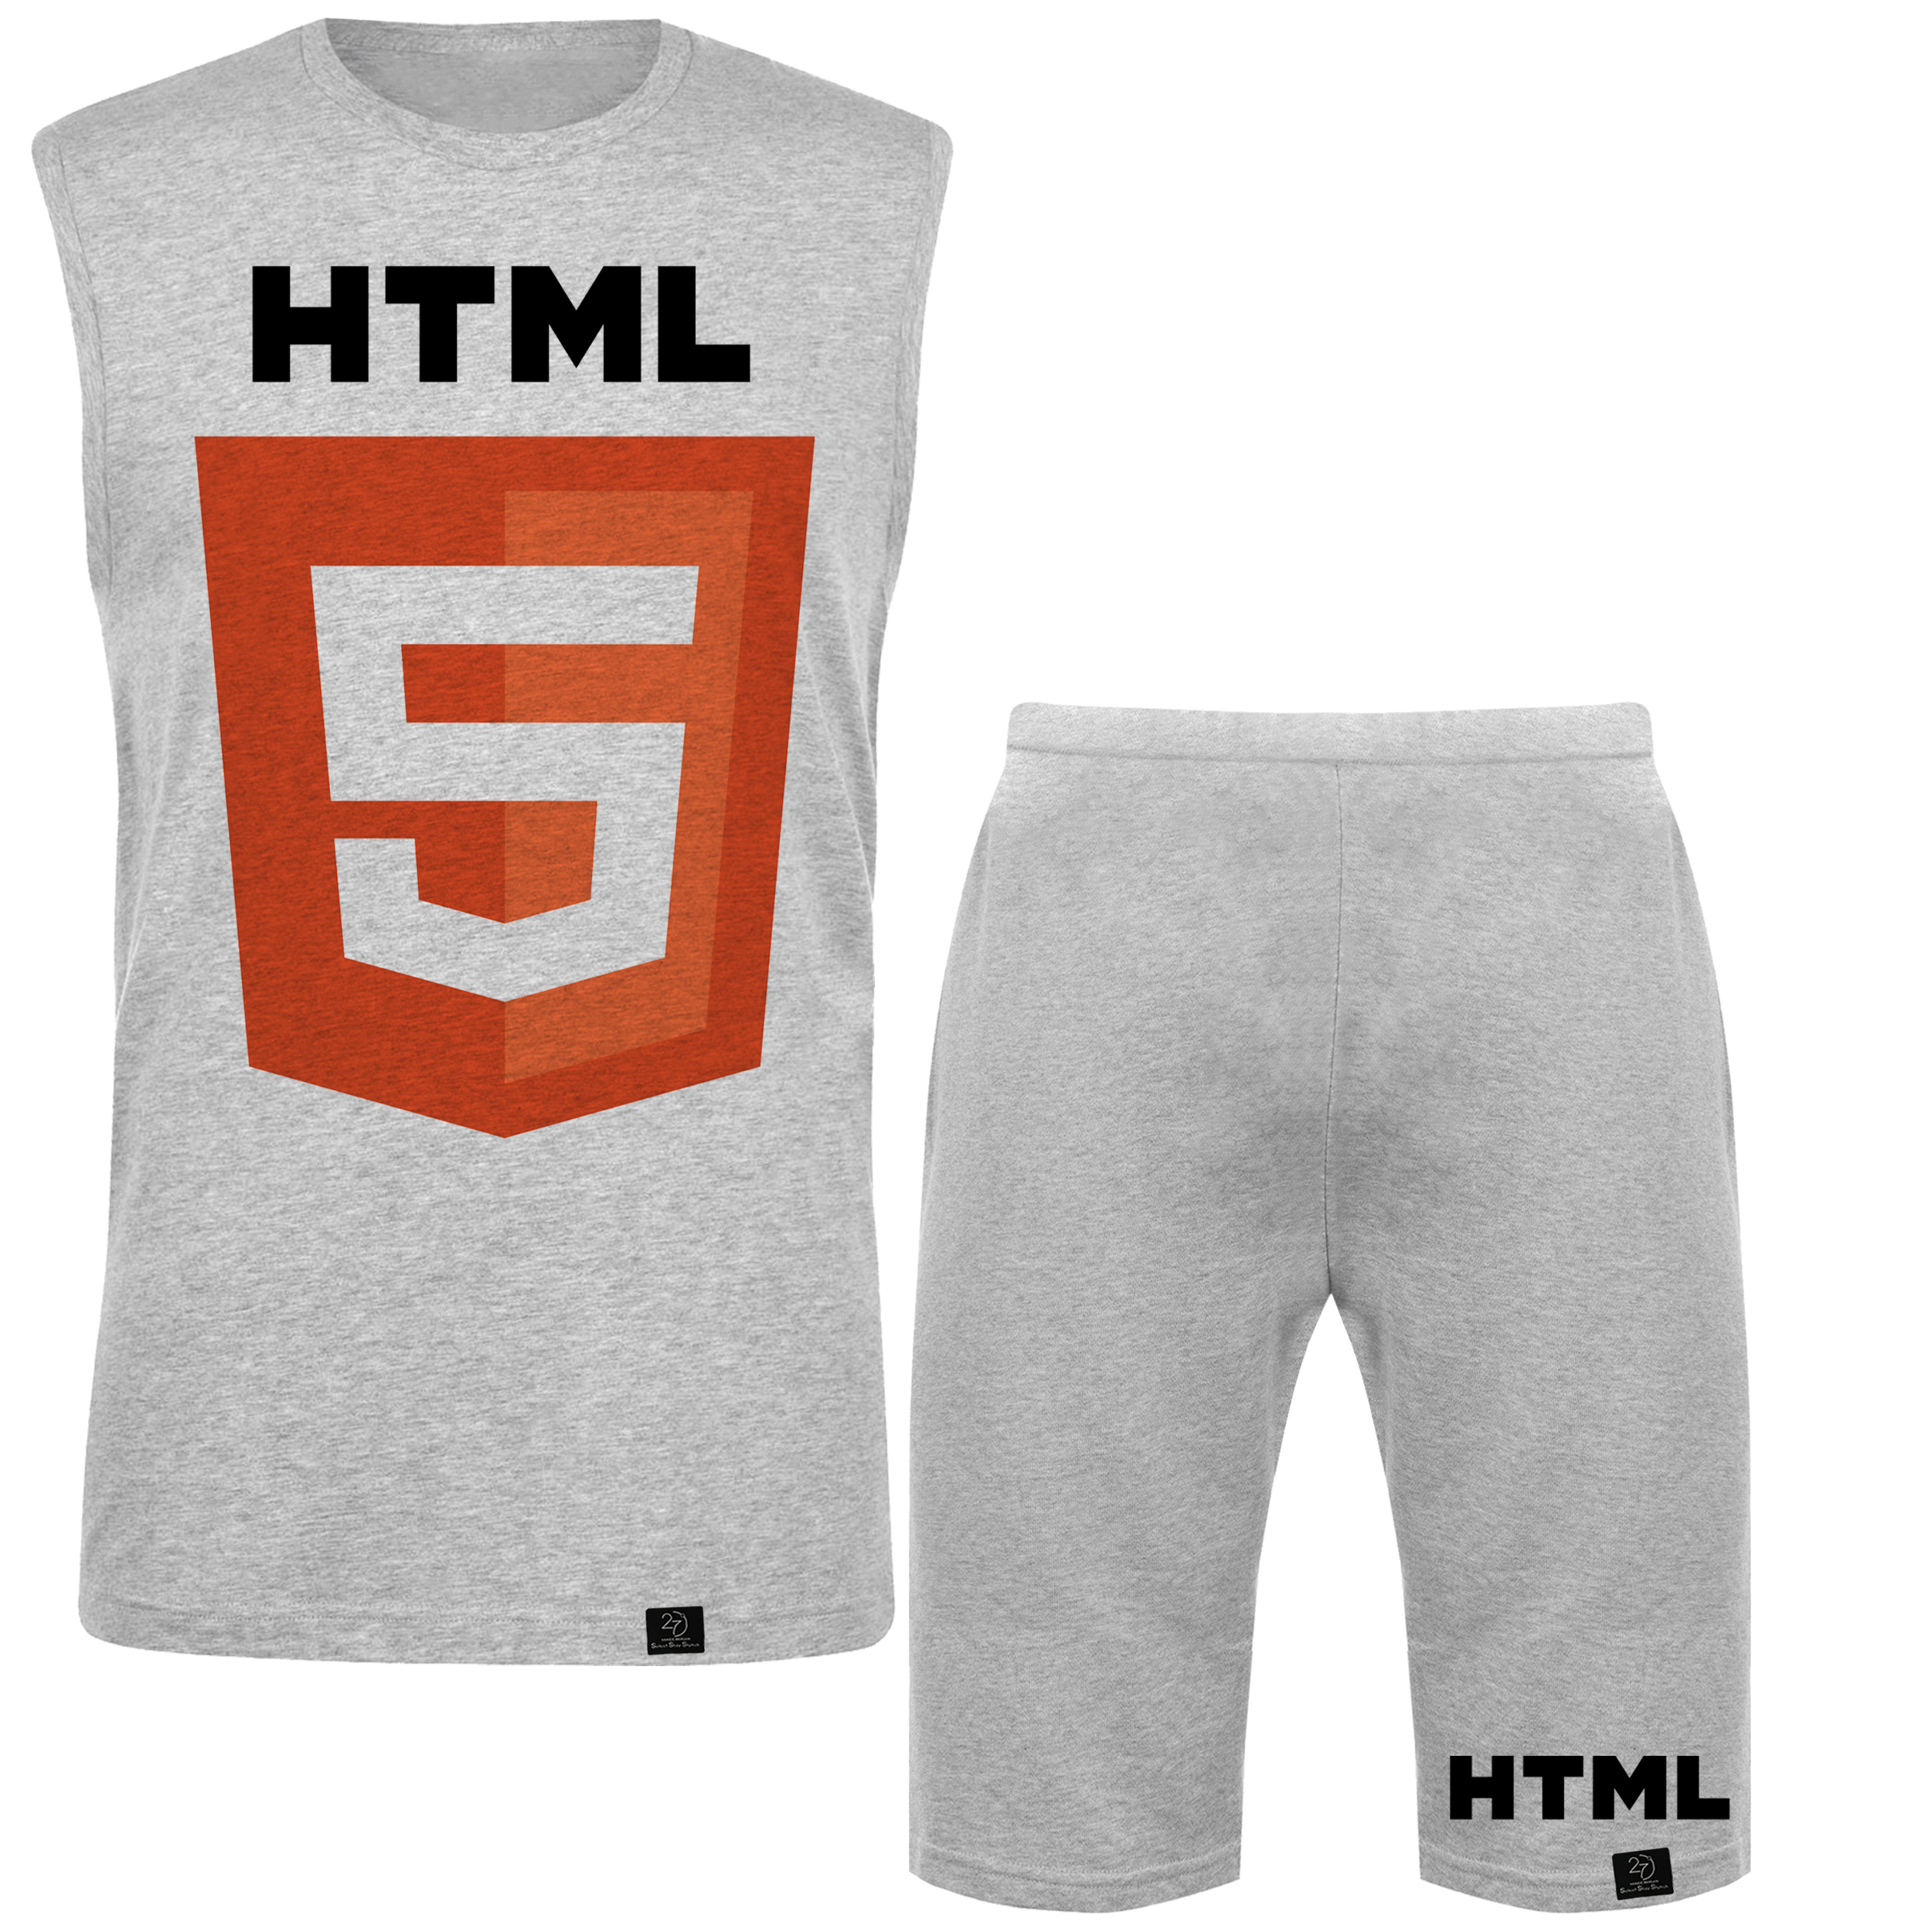 ست تاپ و شلوارک مردانه 27 مدل HTML کد MH313